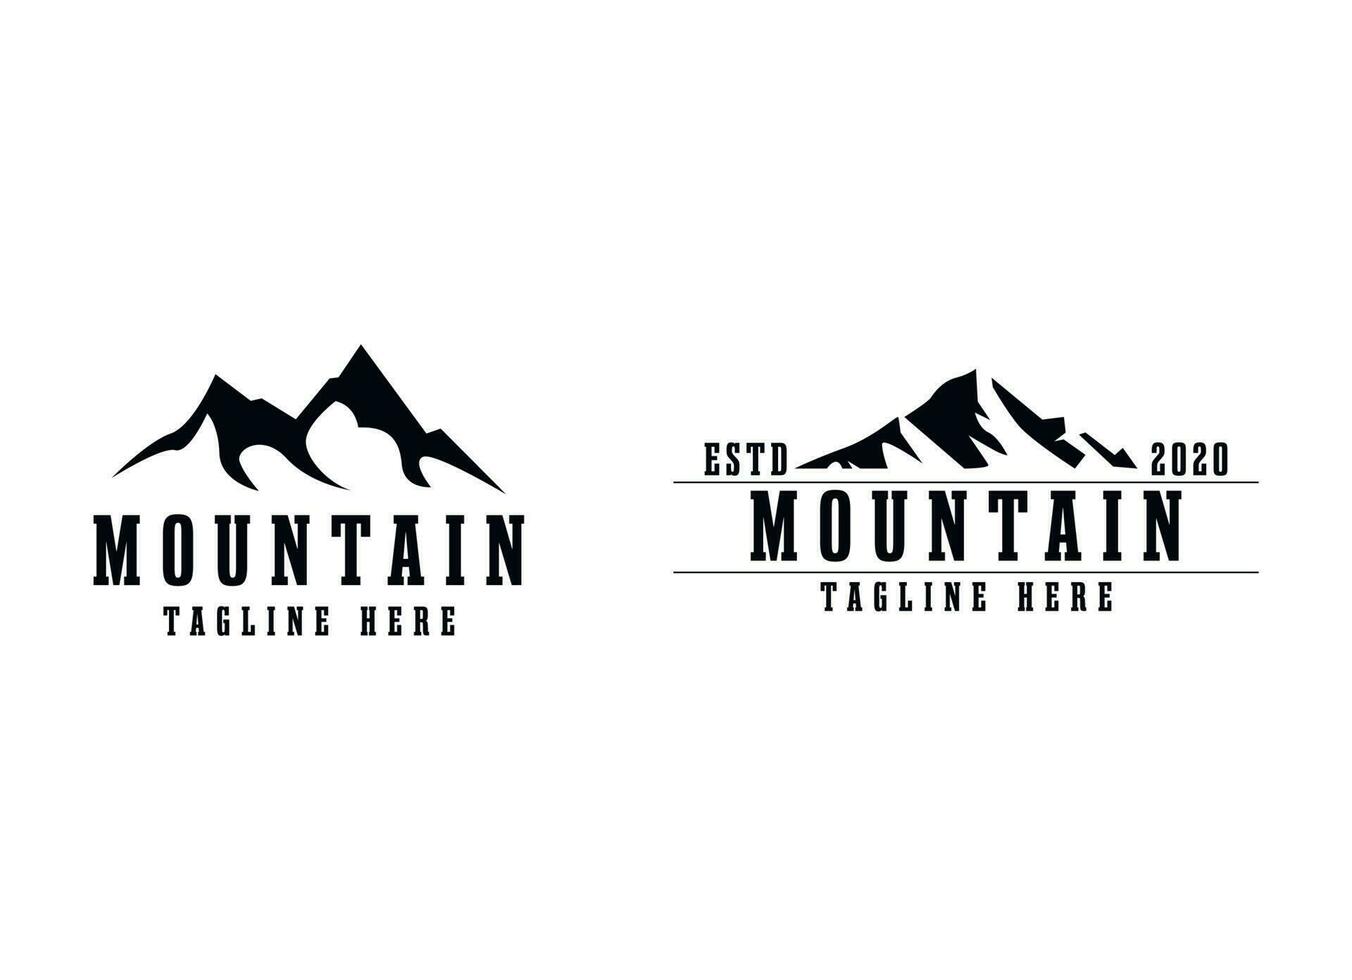 nero montagna logo design modello vettore